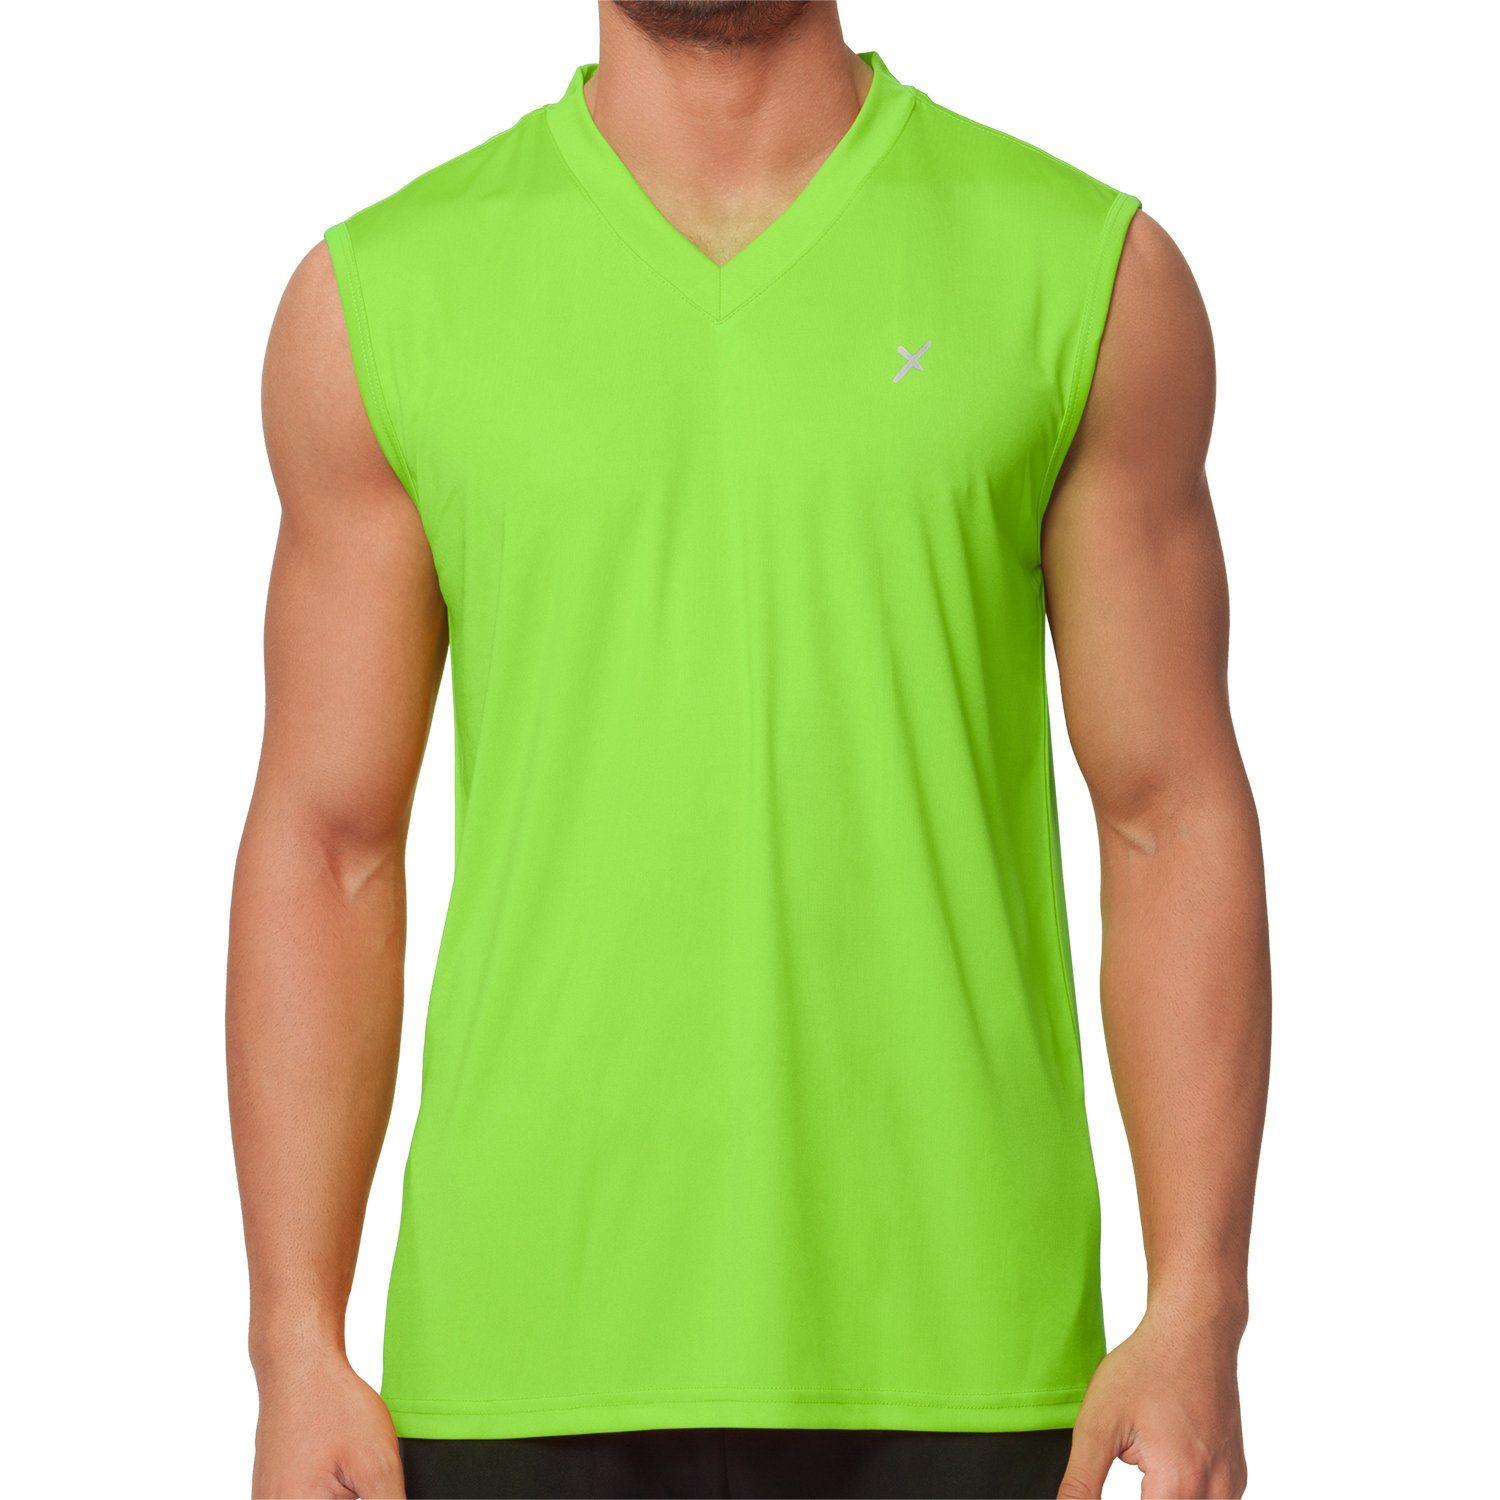 CFLEX Trainingsshirt Fitness Muscle-Shirt Grün Sportswear Collection Herren Shirt Sport